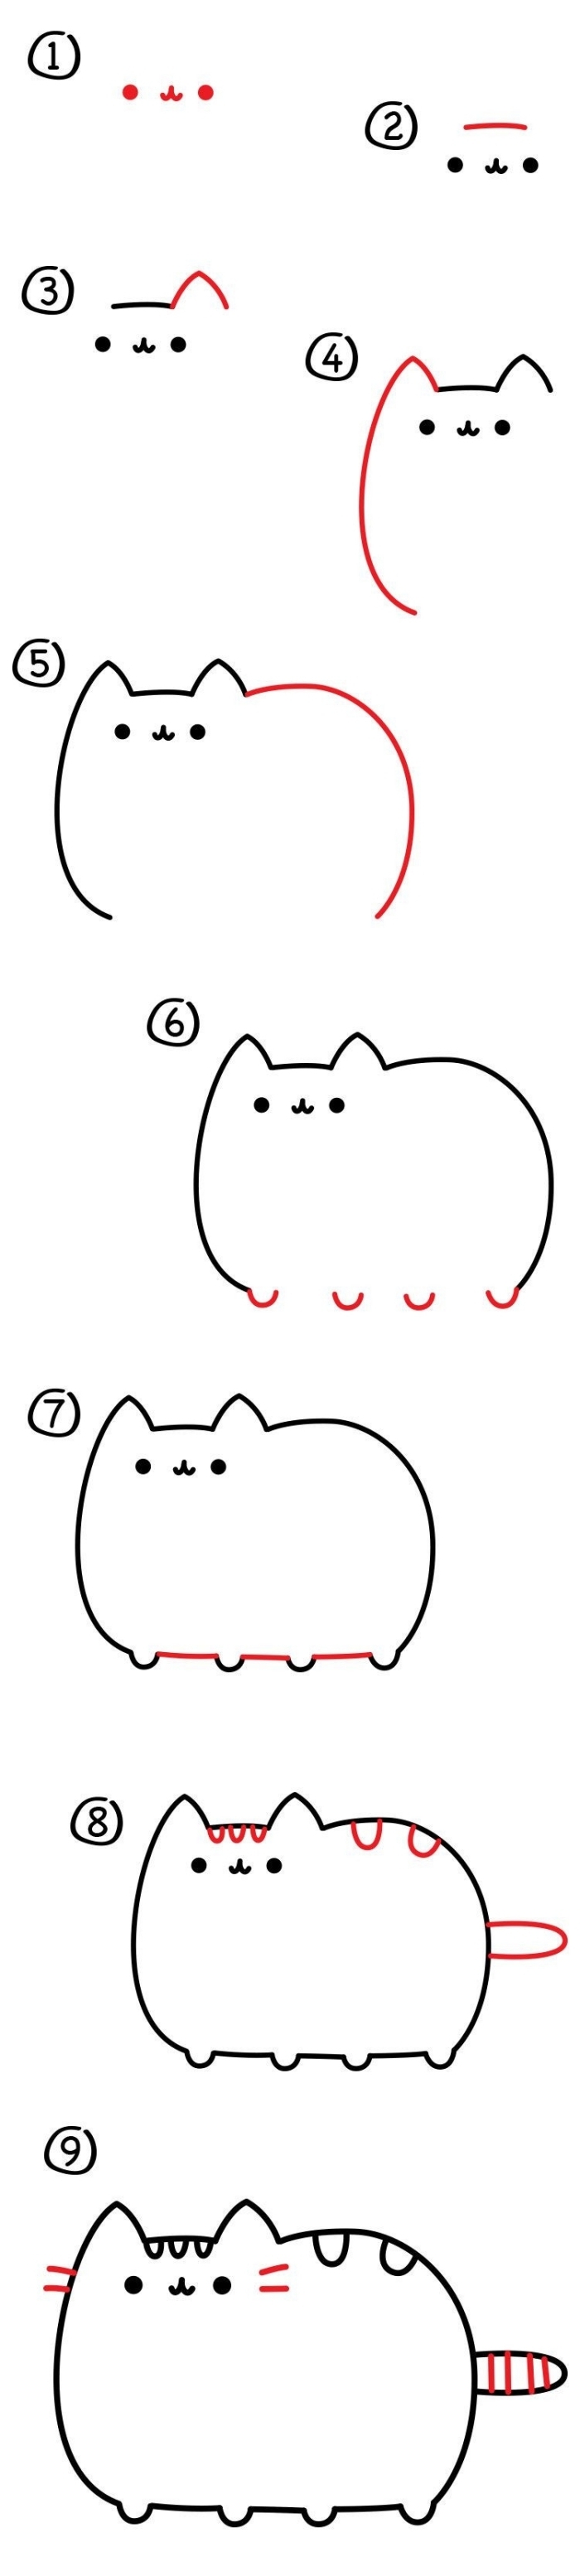 pas à pas détaillé pour réaliser un dessin chat kawaii mignon, apprendre aux enfants de dessiner facilement au crayon